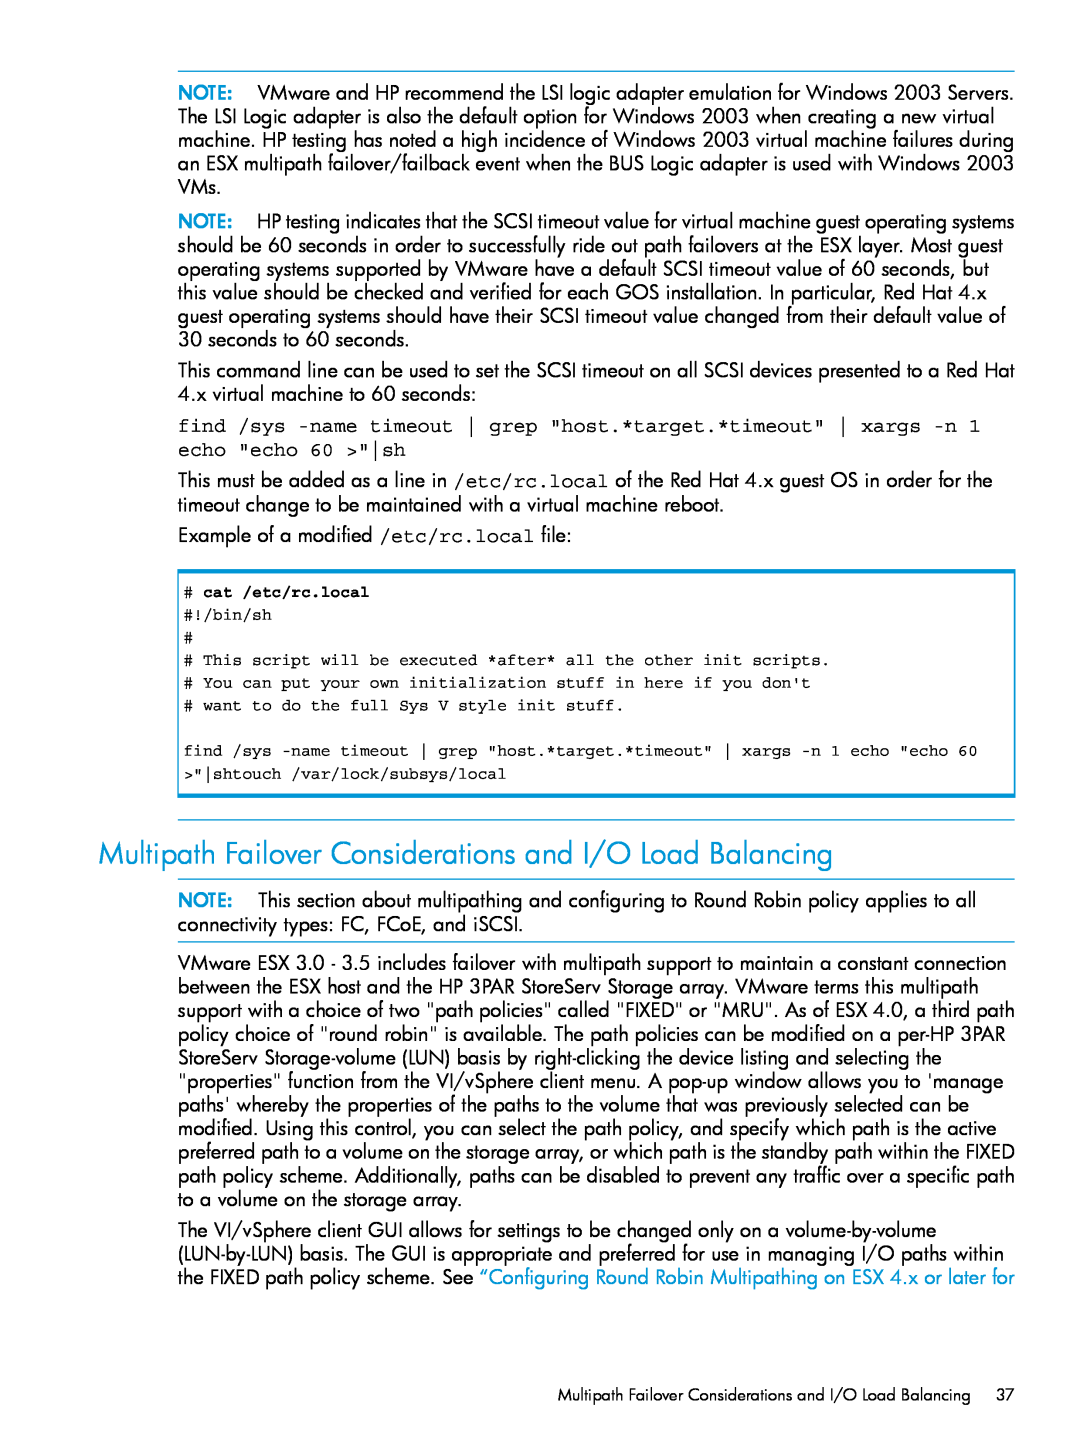 HP QR516B manual Multipath Failover Considerations and I/O Load Balancing 